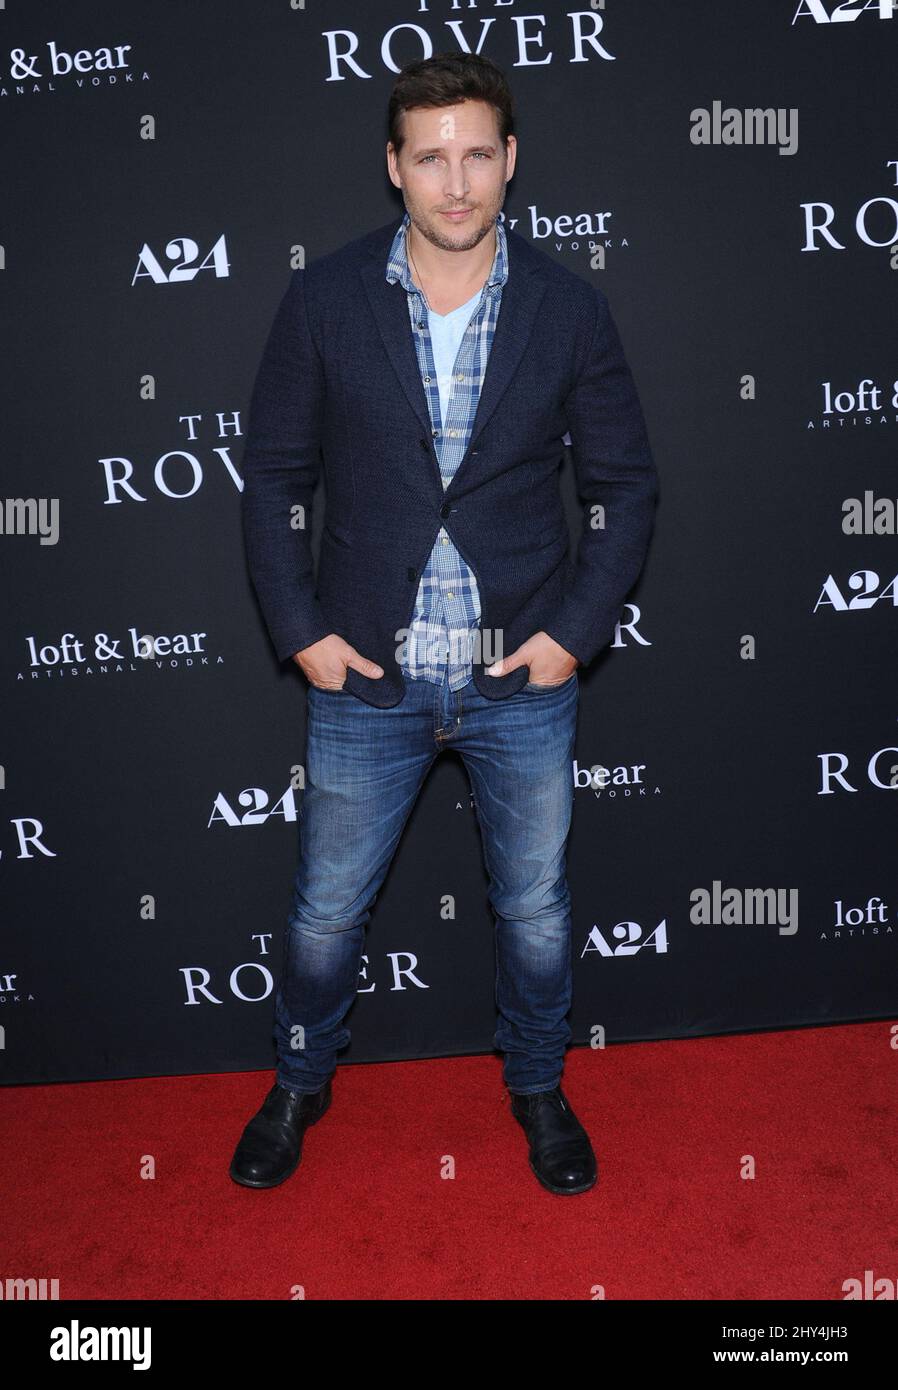 Peter Facinelli bei der US-Premiere von The Rover - Red Carpet, die am Donnerstag, 12. Juni 2014, im Regency Bruin Theatre in Westwood, CA, stattfand. Stockfoto